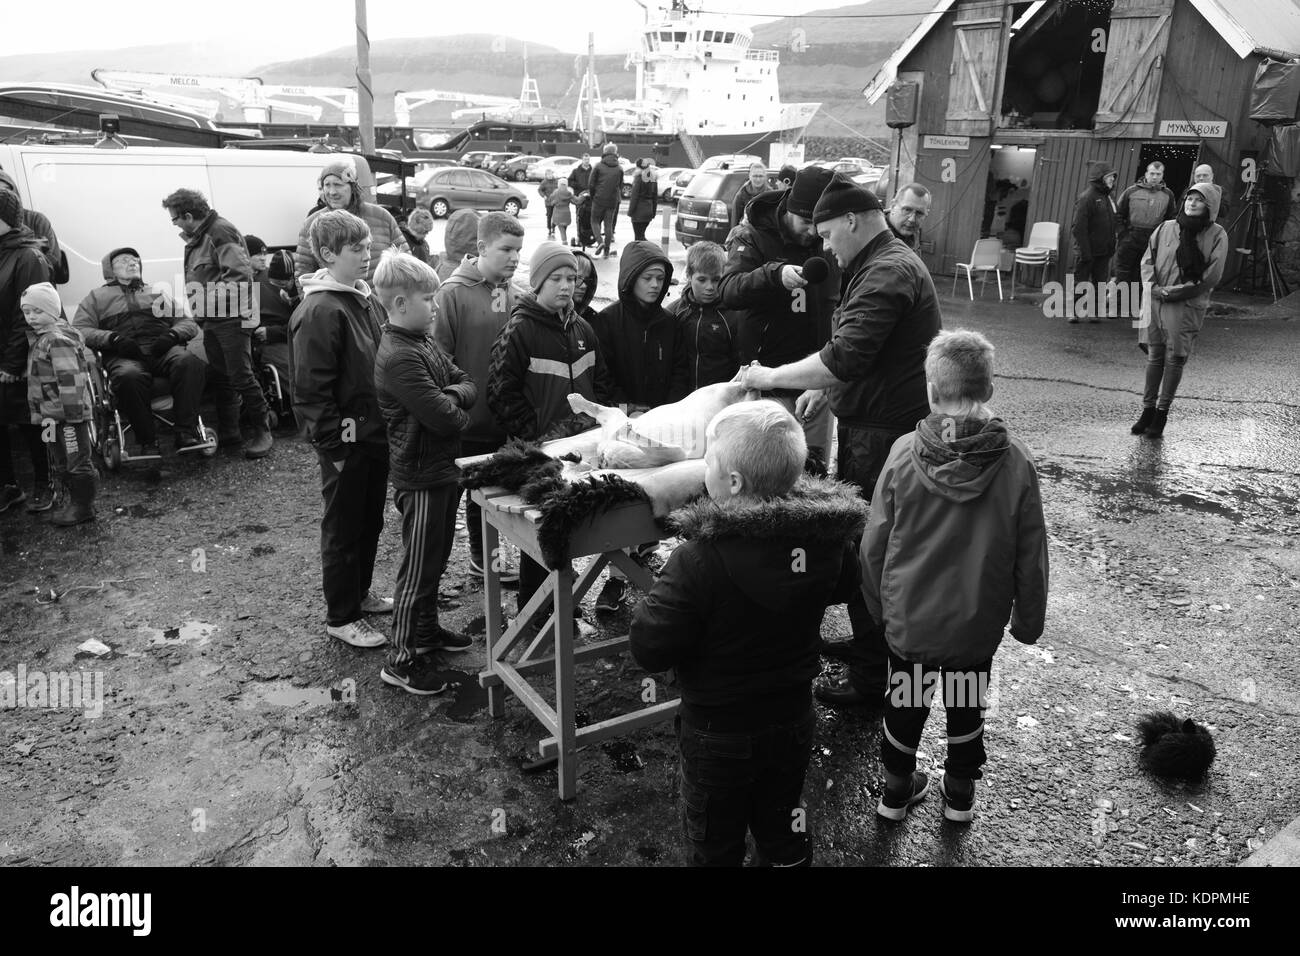 EIDI Village, Eysturoy Island, Färöer Inseln, 14. Oktober 2017. Die Faroeser Dorfbewohner beobachten traditionelle Schaf-Schlachtung Demonstration auf dem lokalen Heystfagnadur Festival. Stockfoto